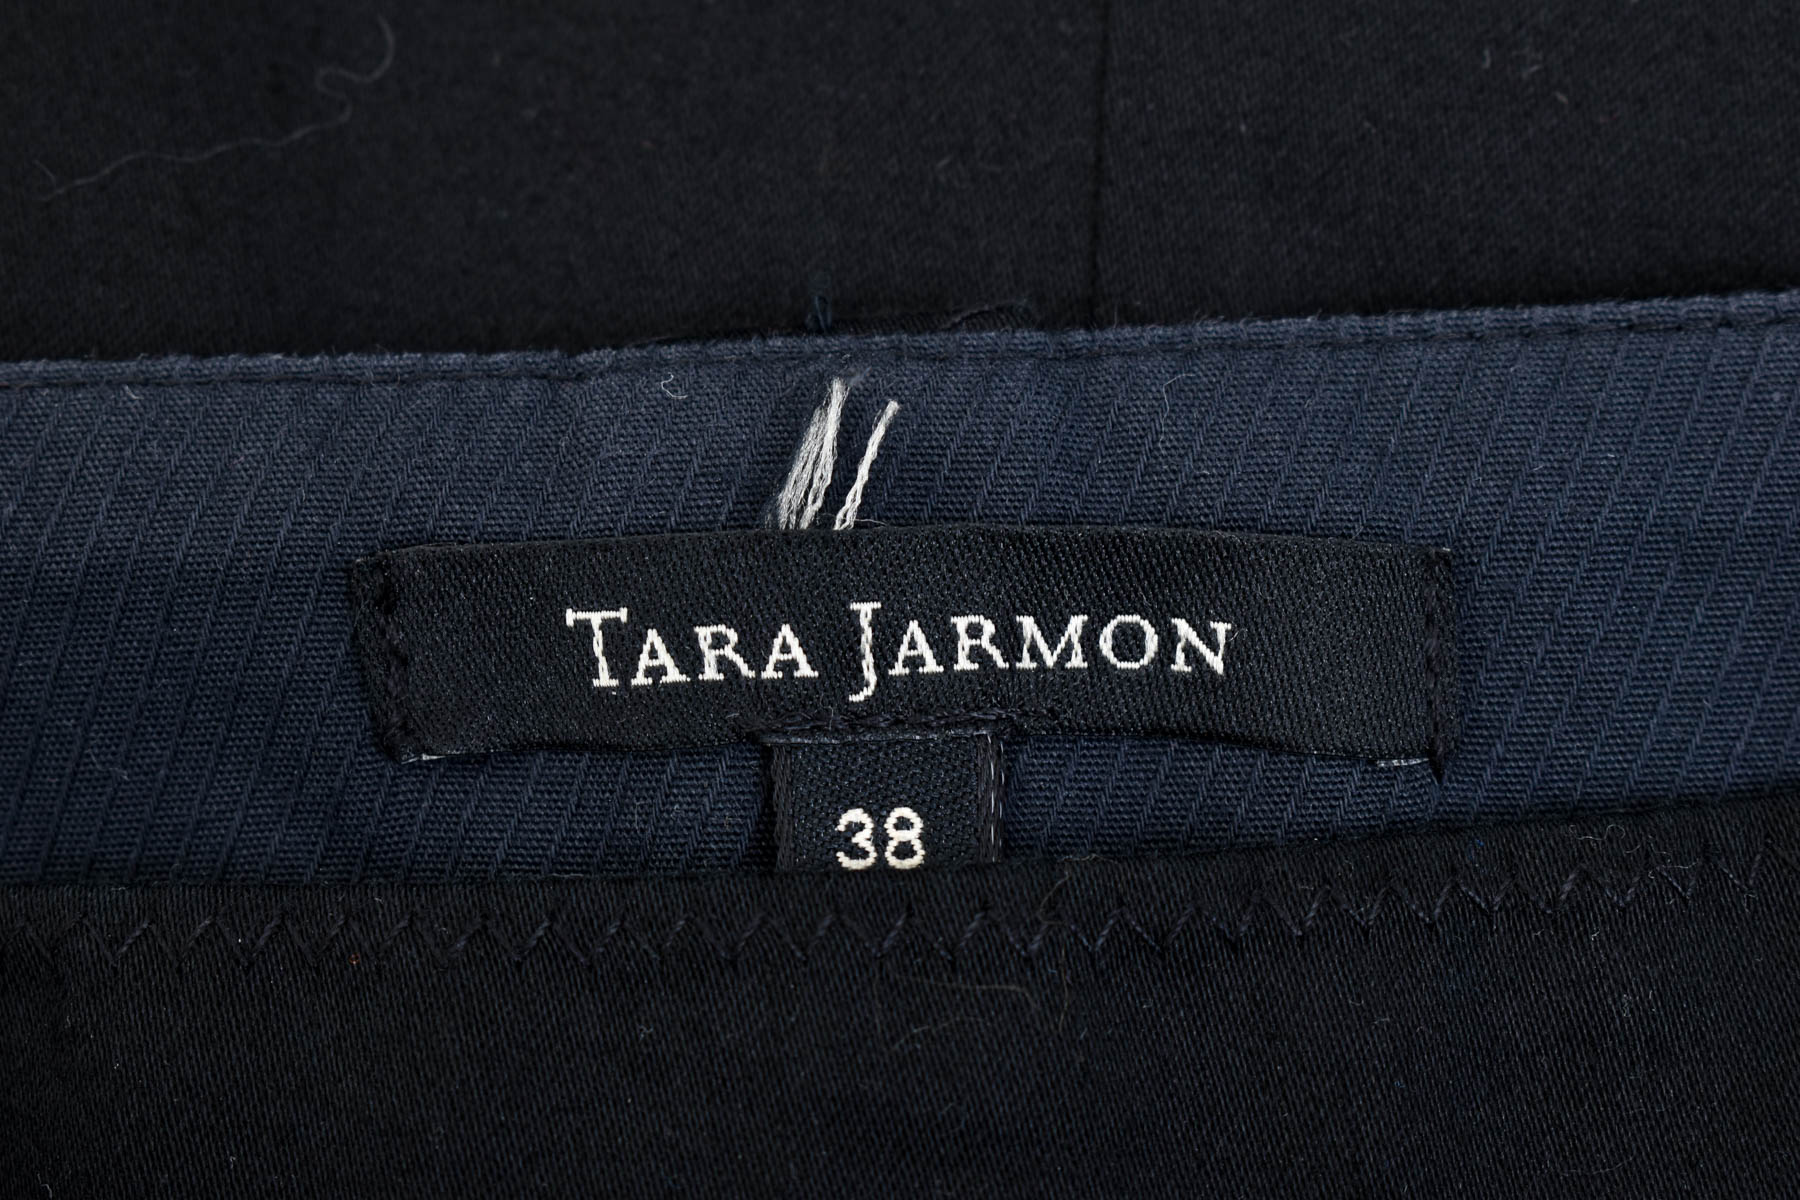 Skirt - Tara Jarmon - 2